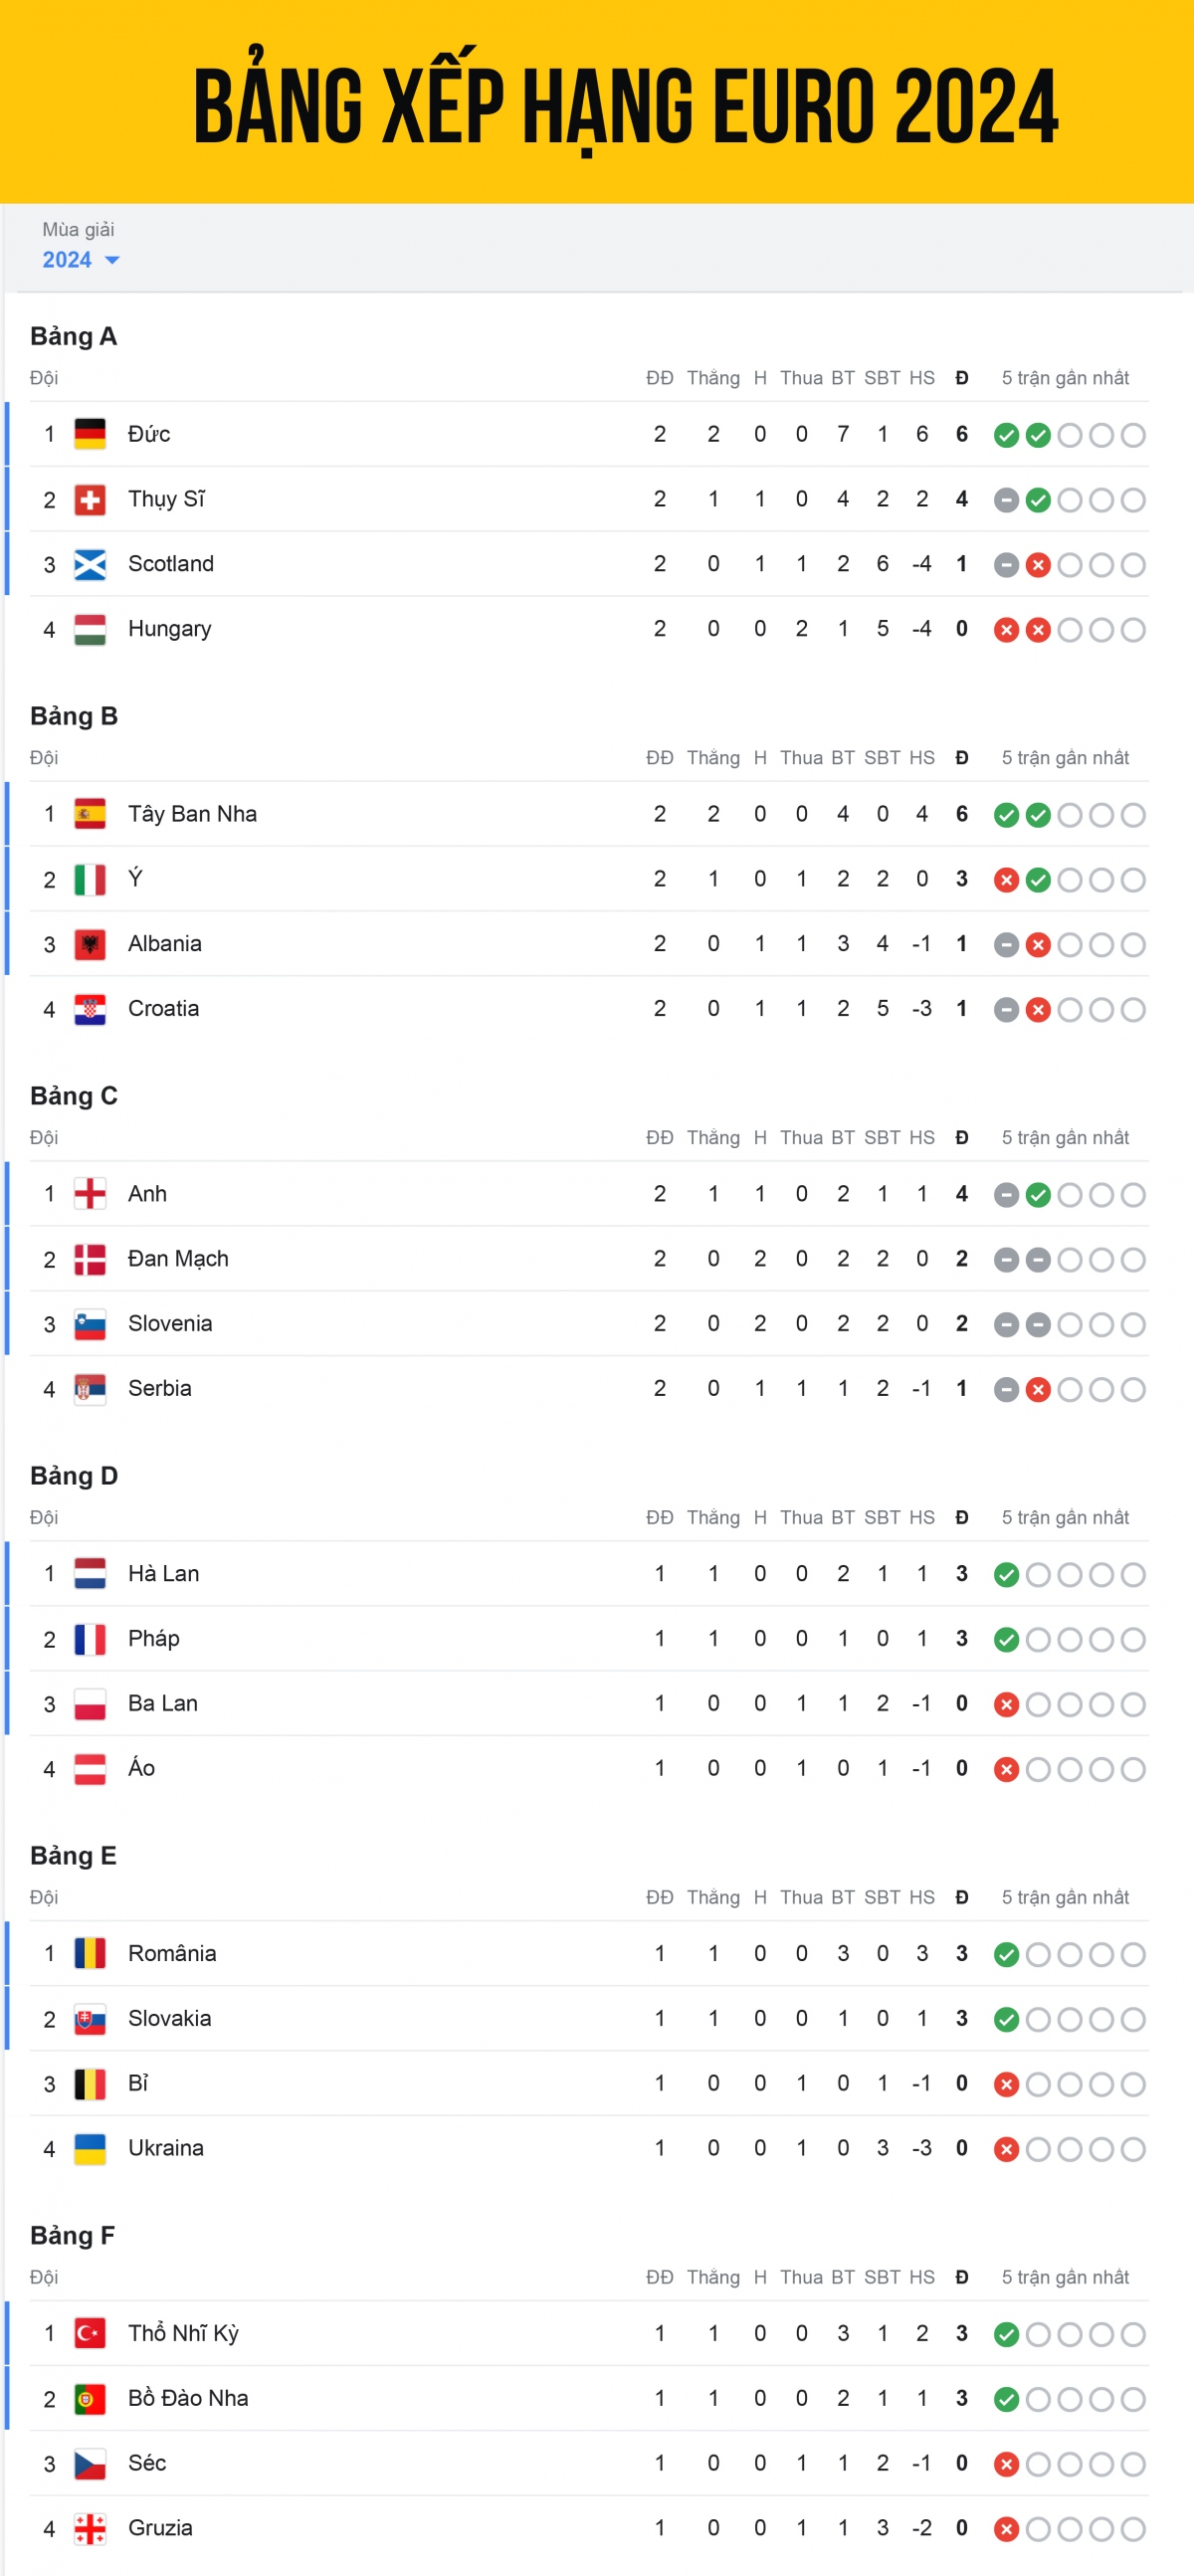 Bảng xếp hạng EURO 2024 mới nhất: Xác định 2 đội giành vé sớm vào vòng 1/8